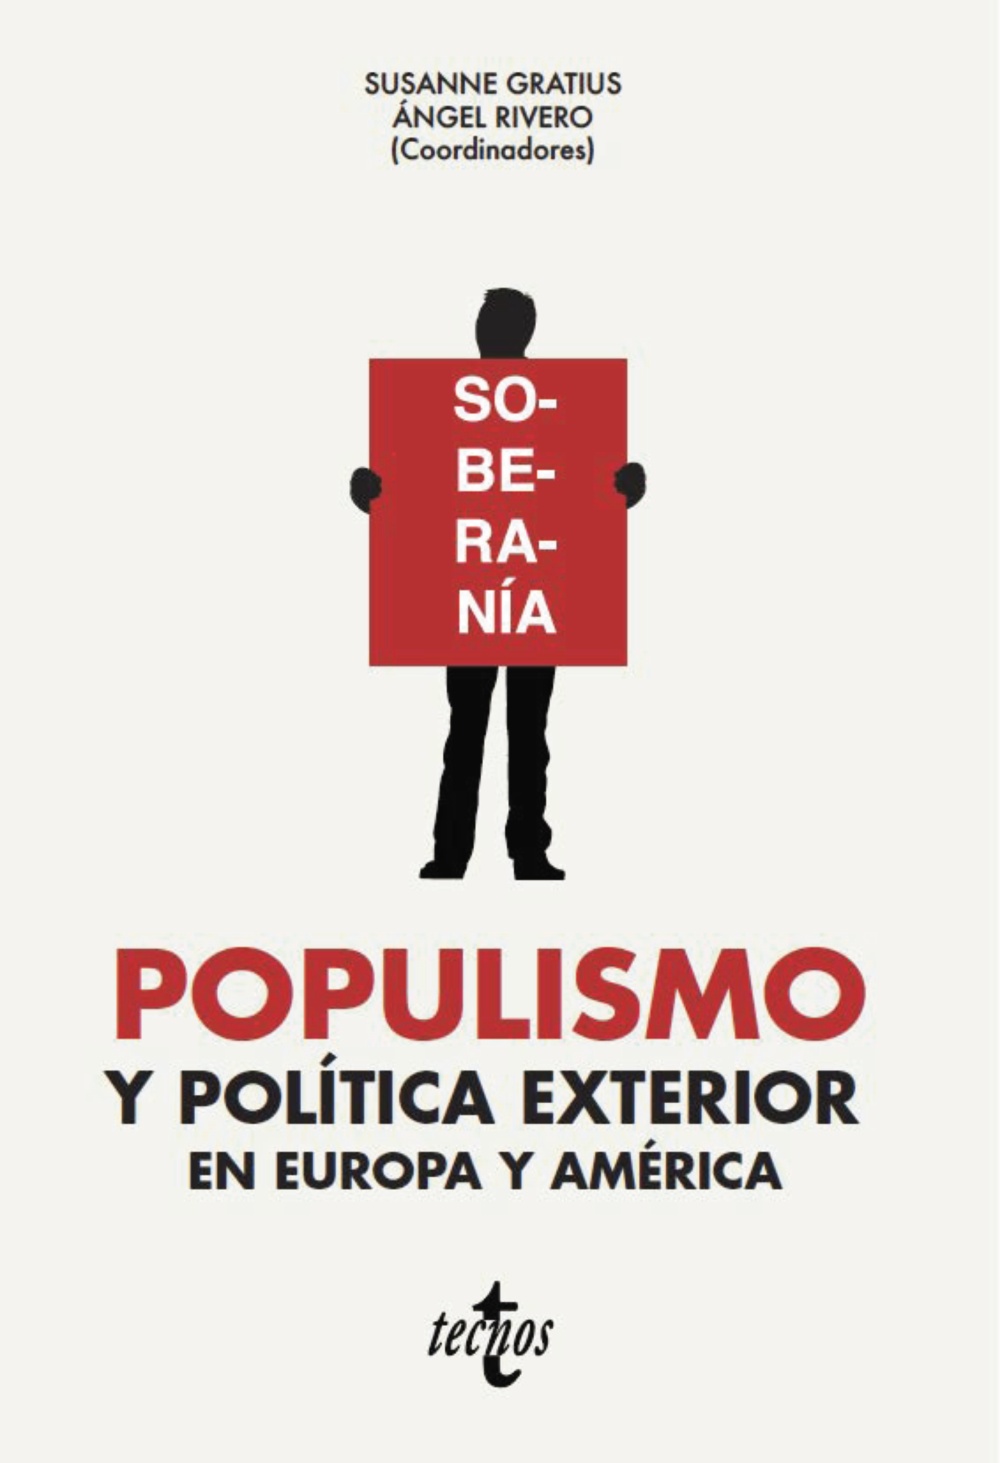 Imagen de portada del libro Populismo y política exterior en Europa y América